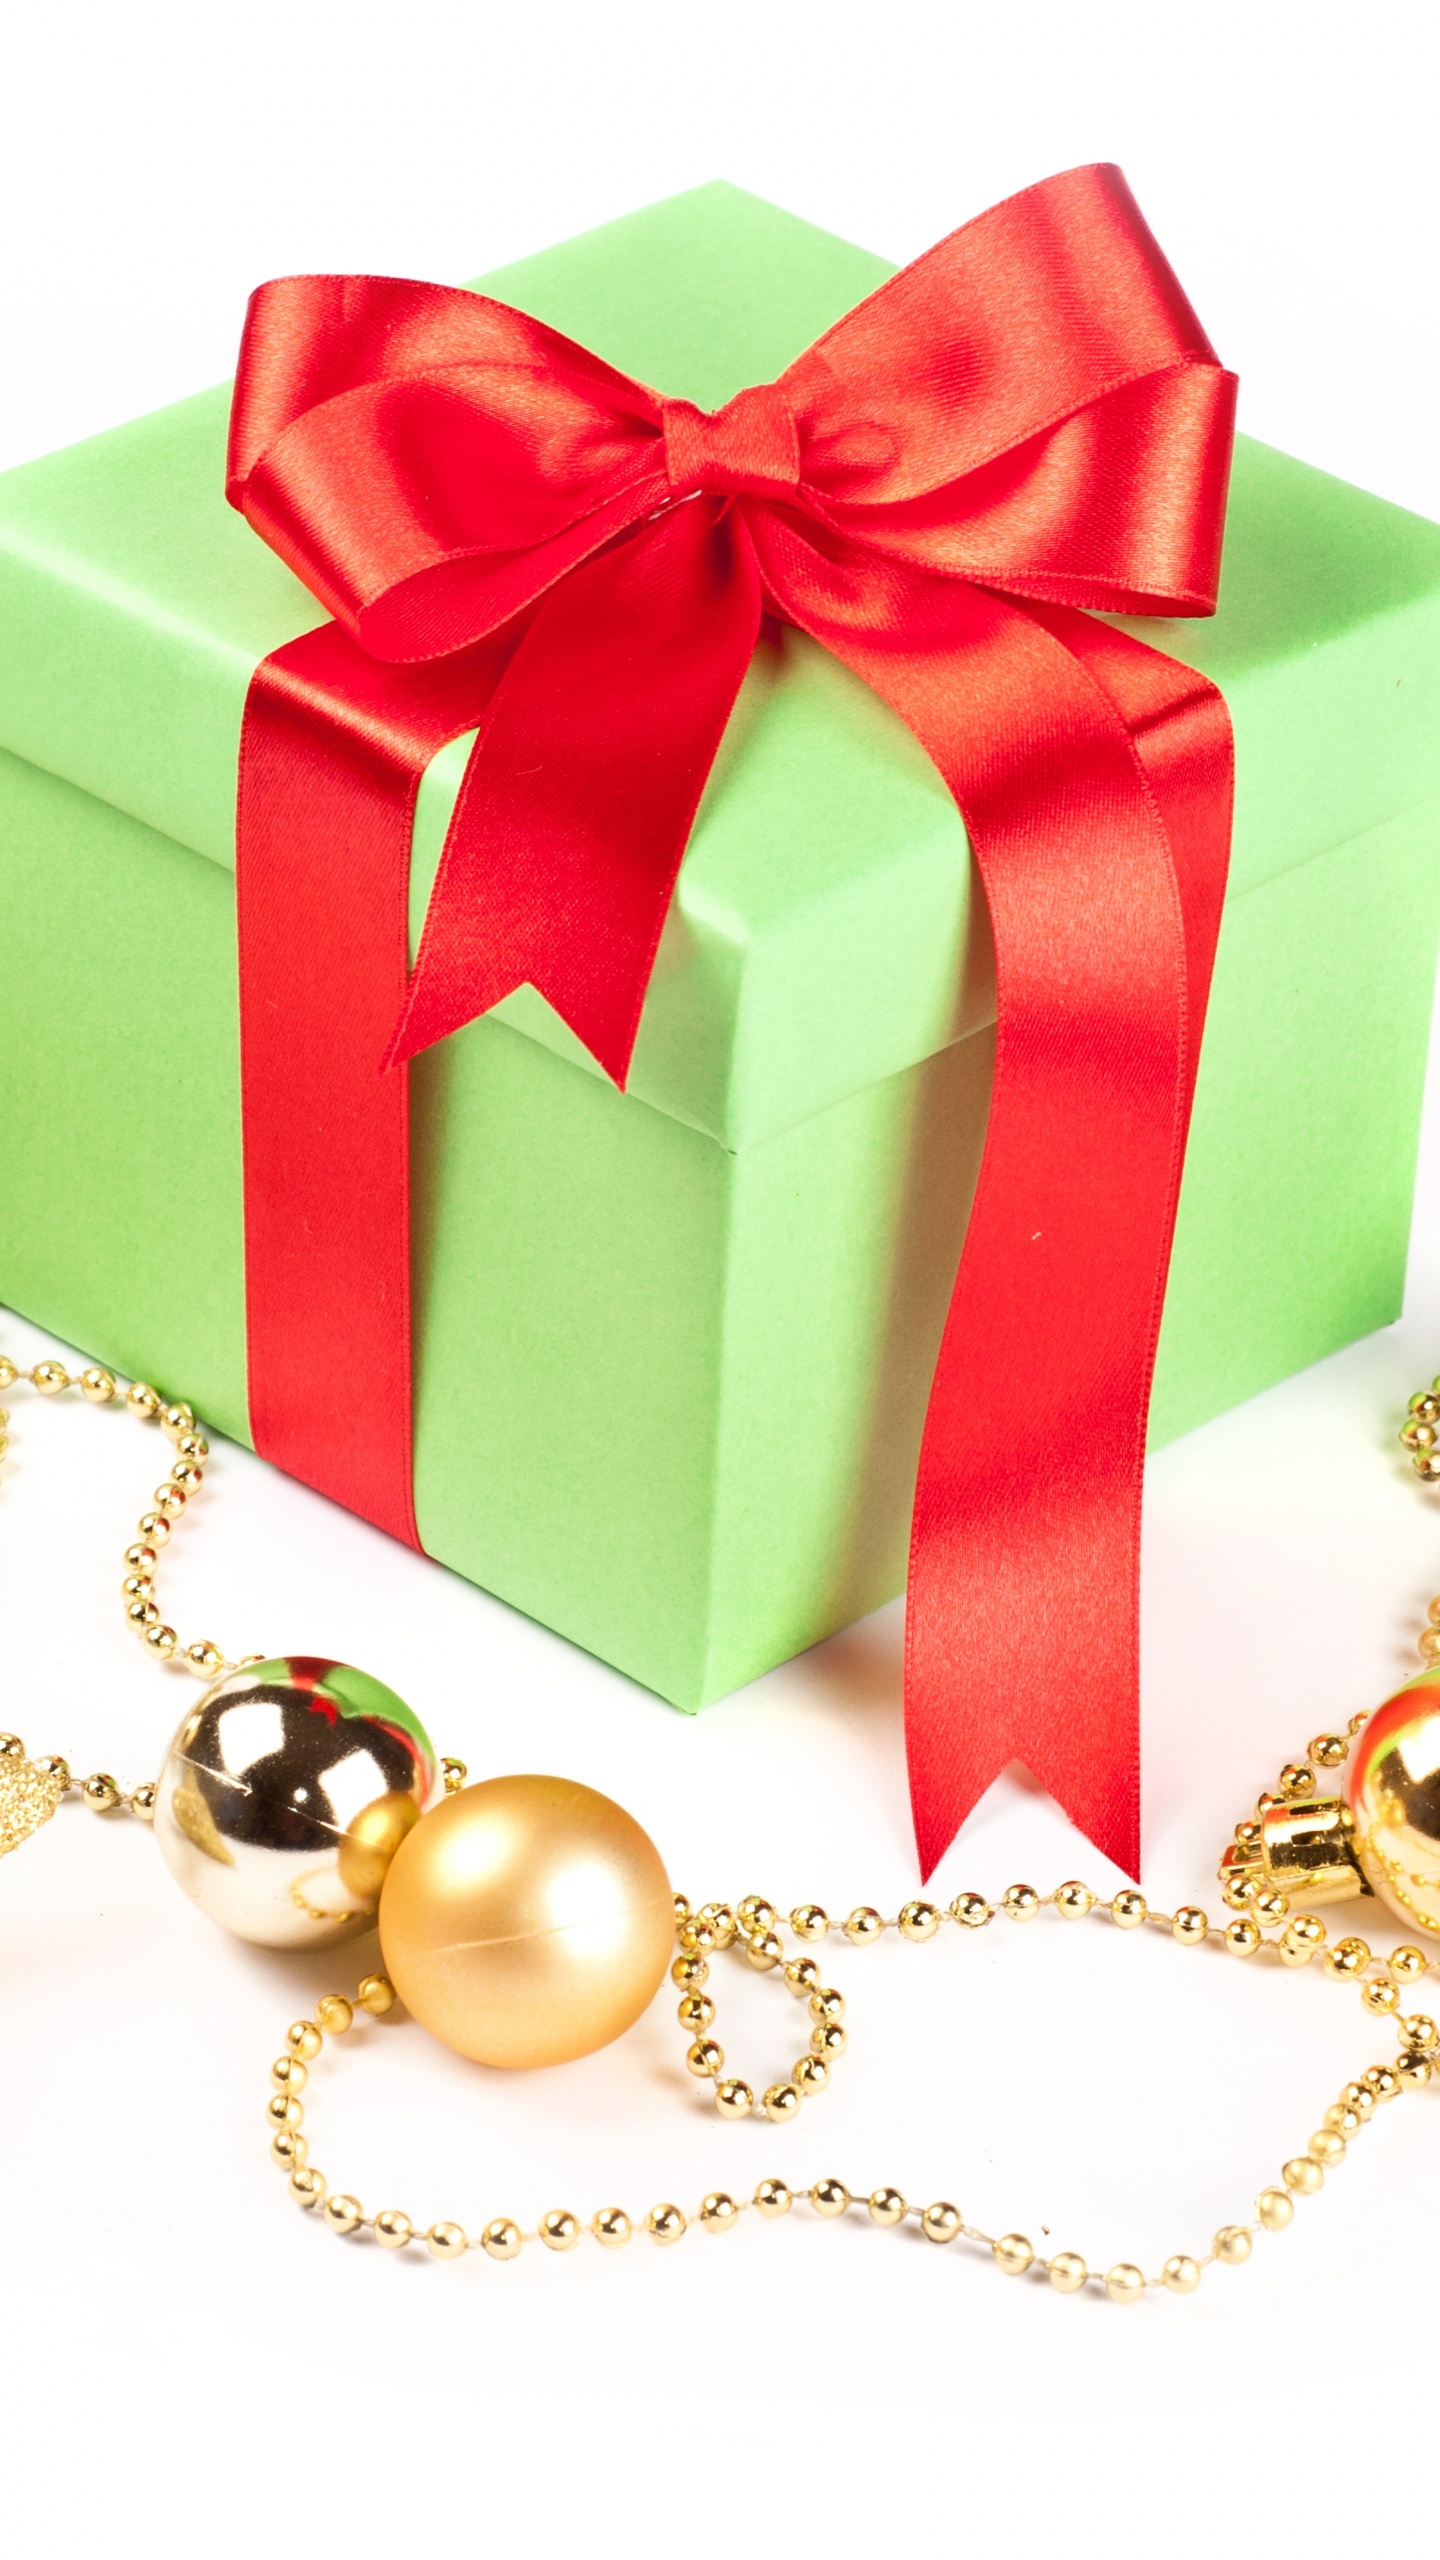 圣诞节的装饰品, 礼物, 圣诞节那天, 新的一年, 礼品包装 壁纸 1440x2560 允许